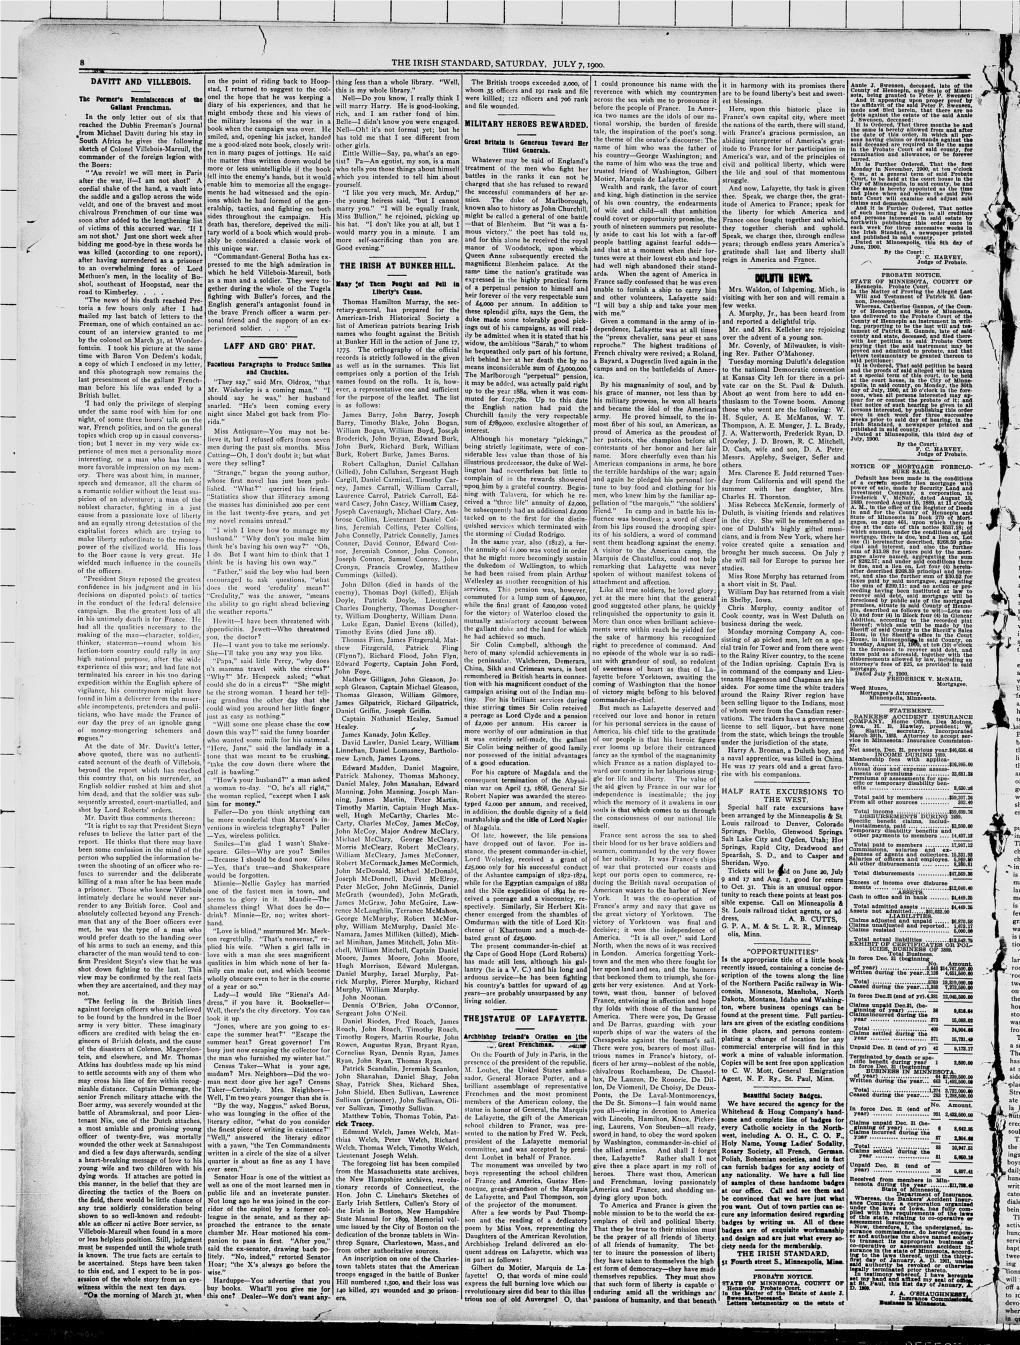 The Irish Standard. (Minneapolis, Minn. ; St. Paul, Minn.), 1900-07